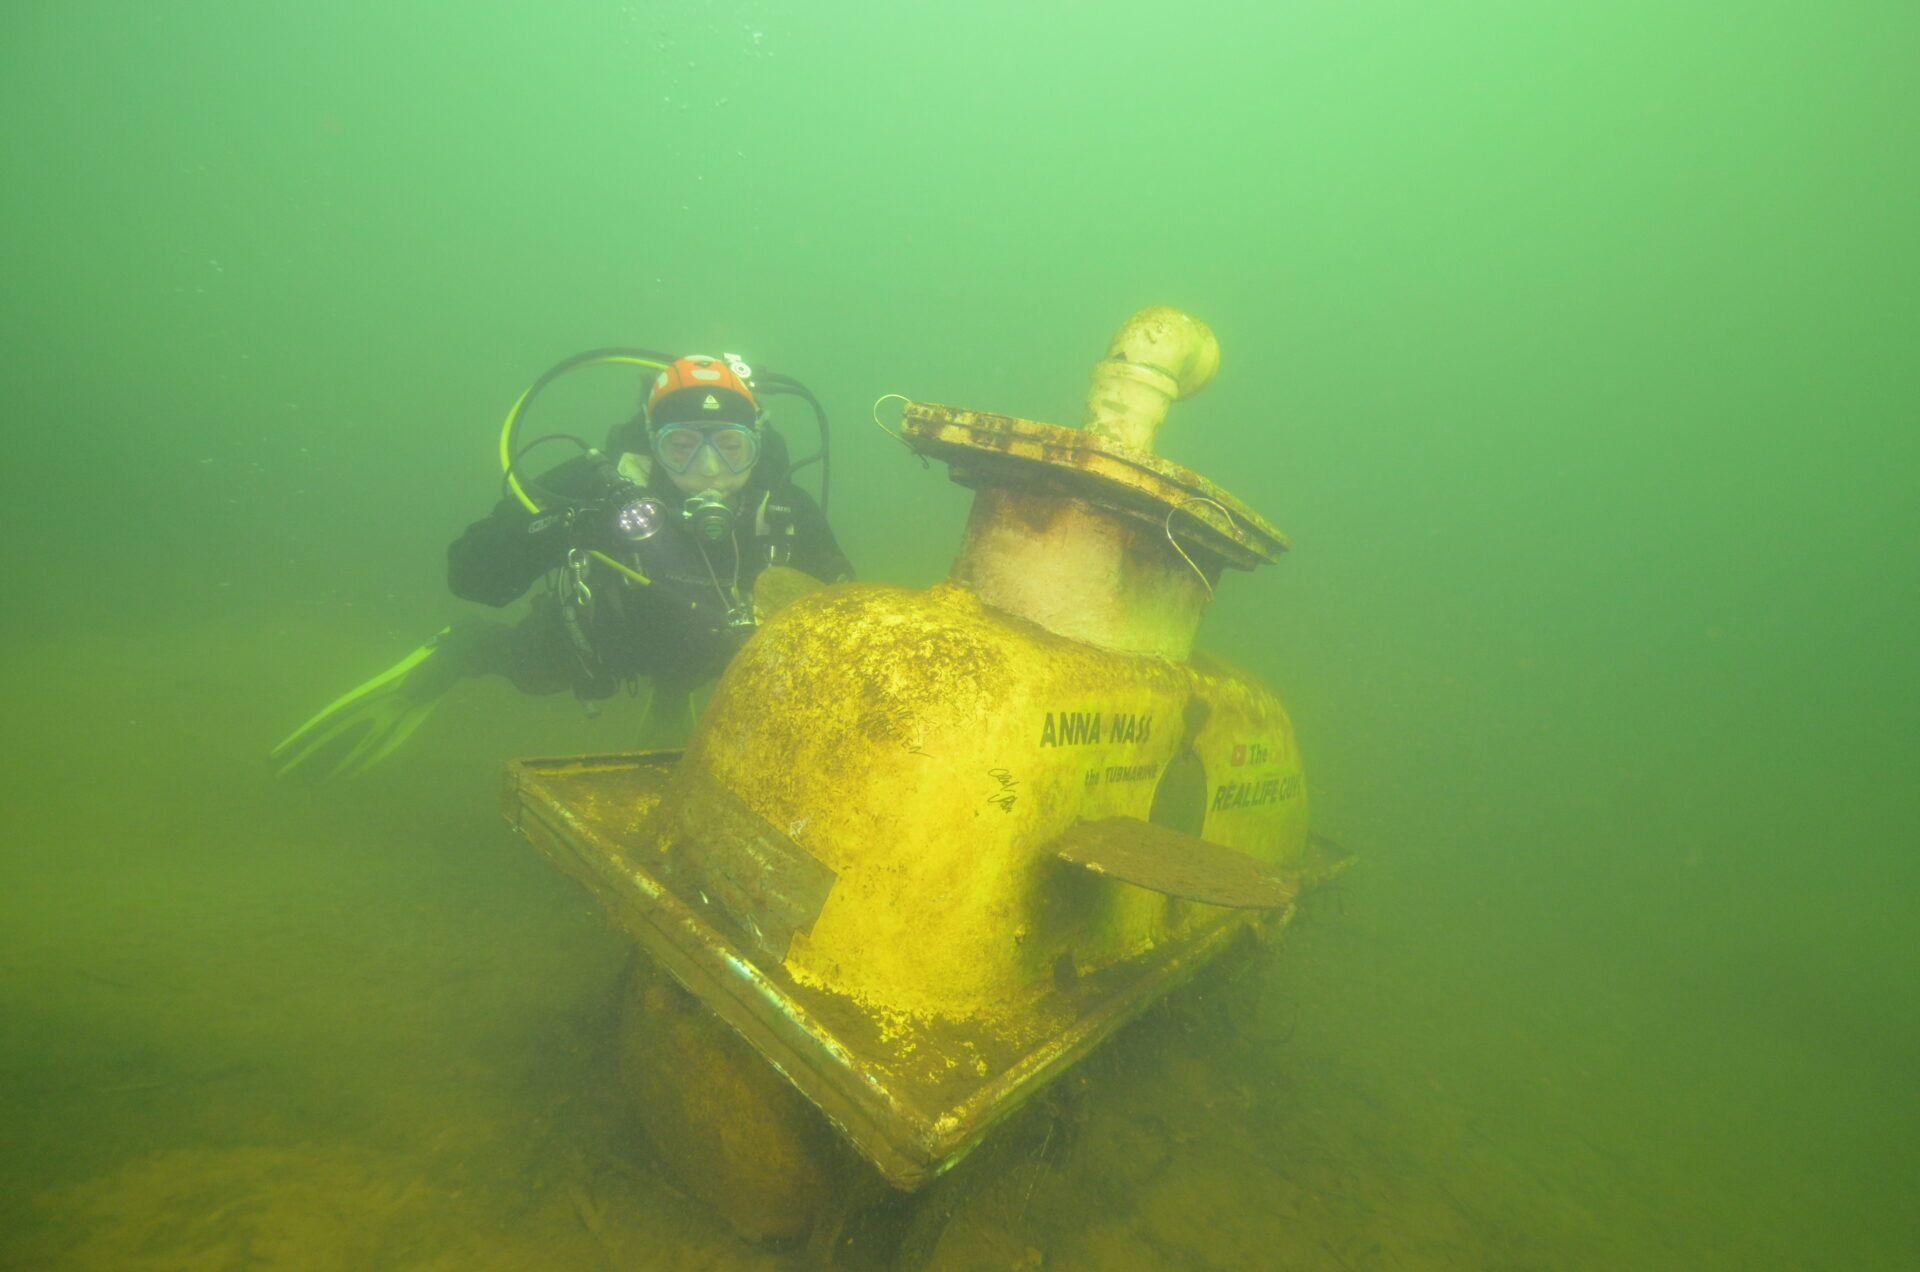 Die "Anna Nass", das von den TheRealLifeGuys gebaute Badewannen-U-Boot